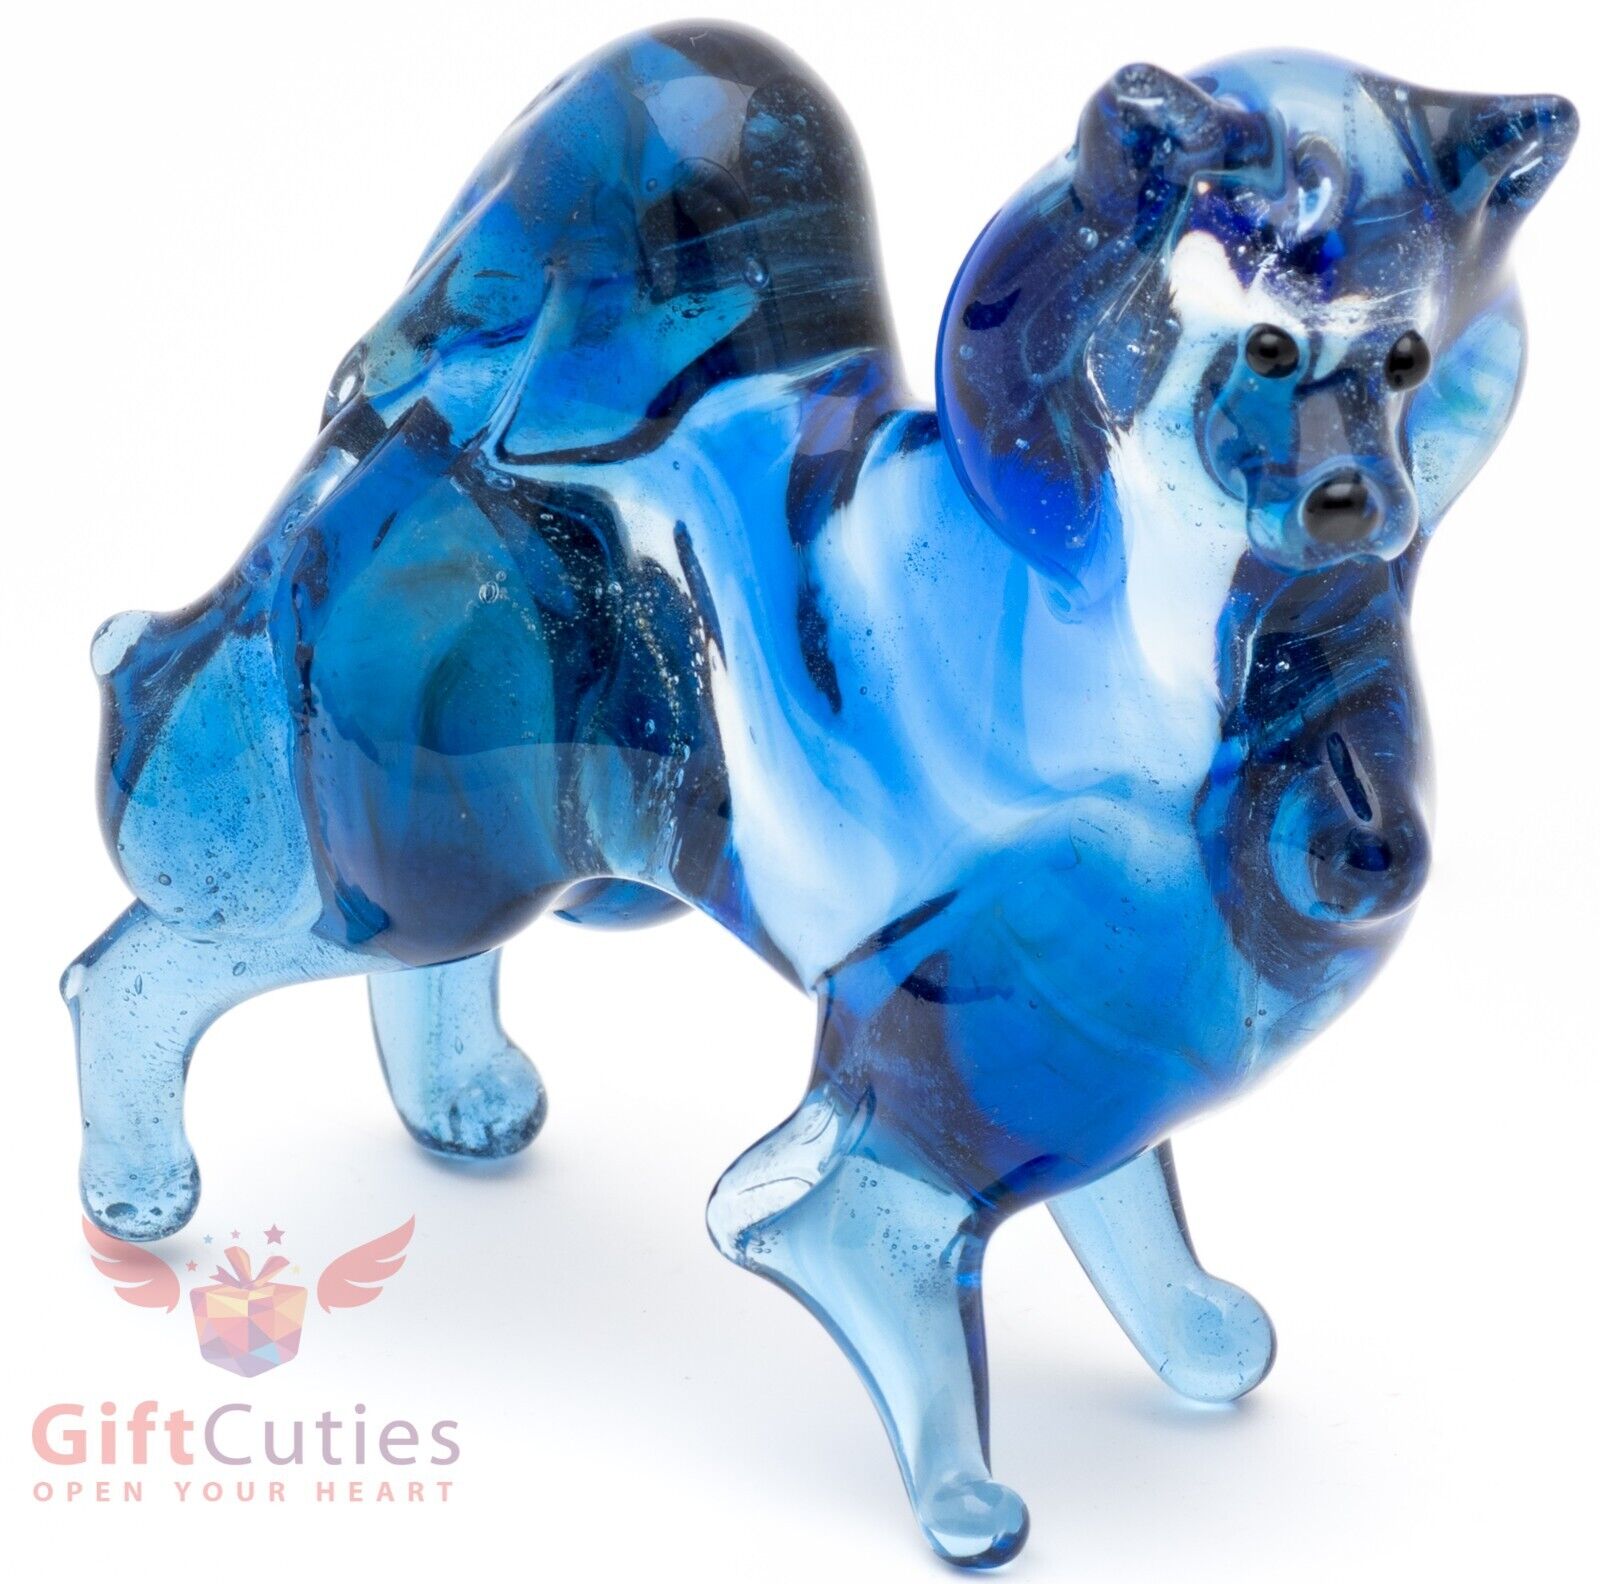 Art Blown Glass Figurine of the Pomeranian Spitz dog